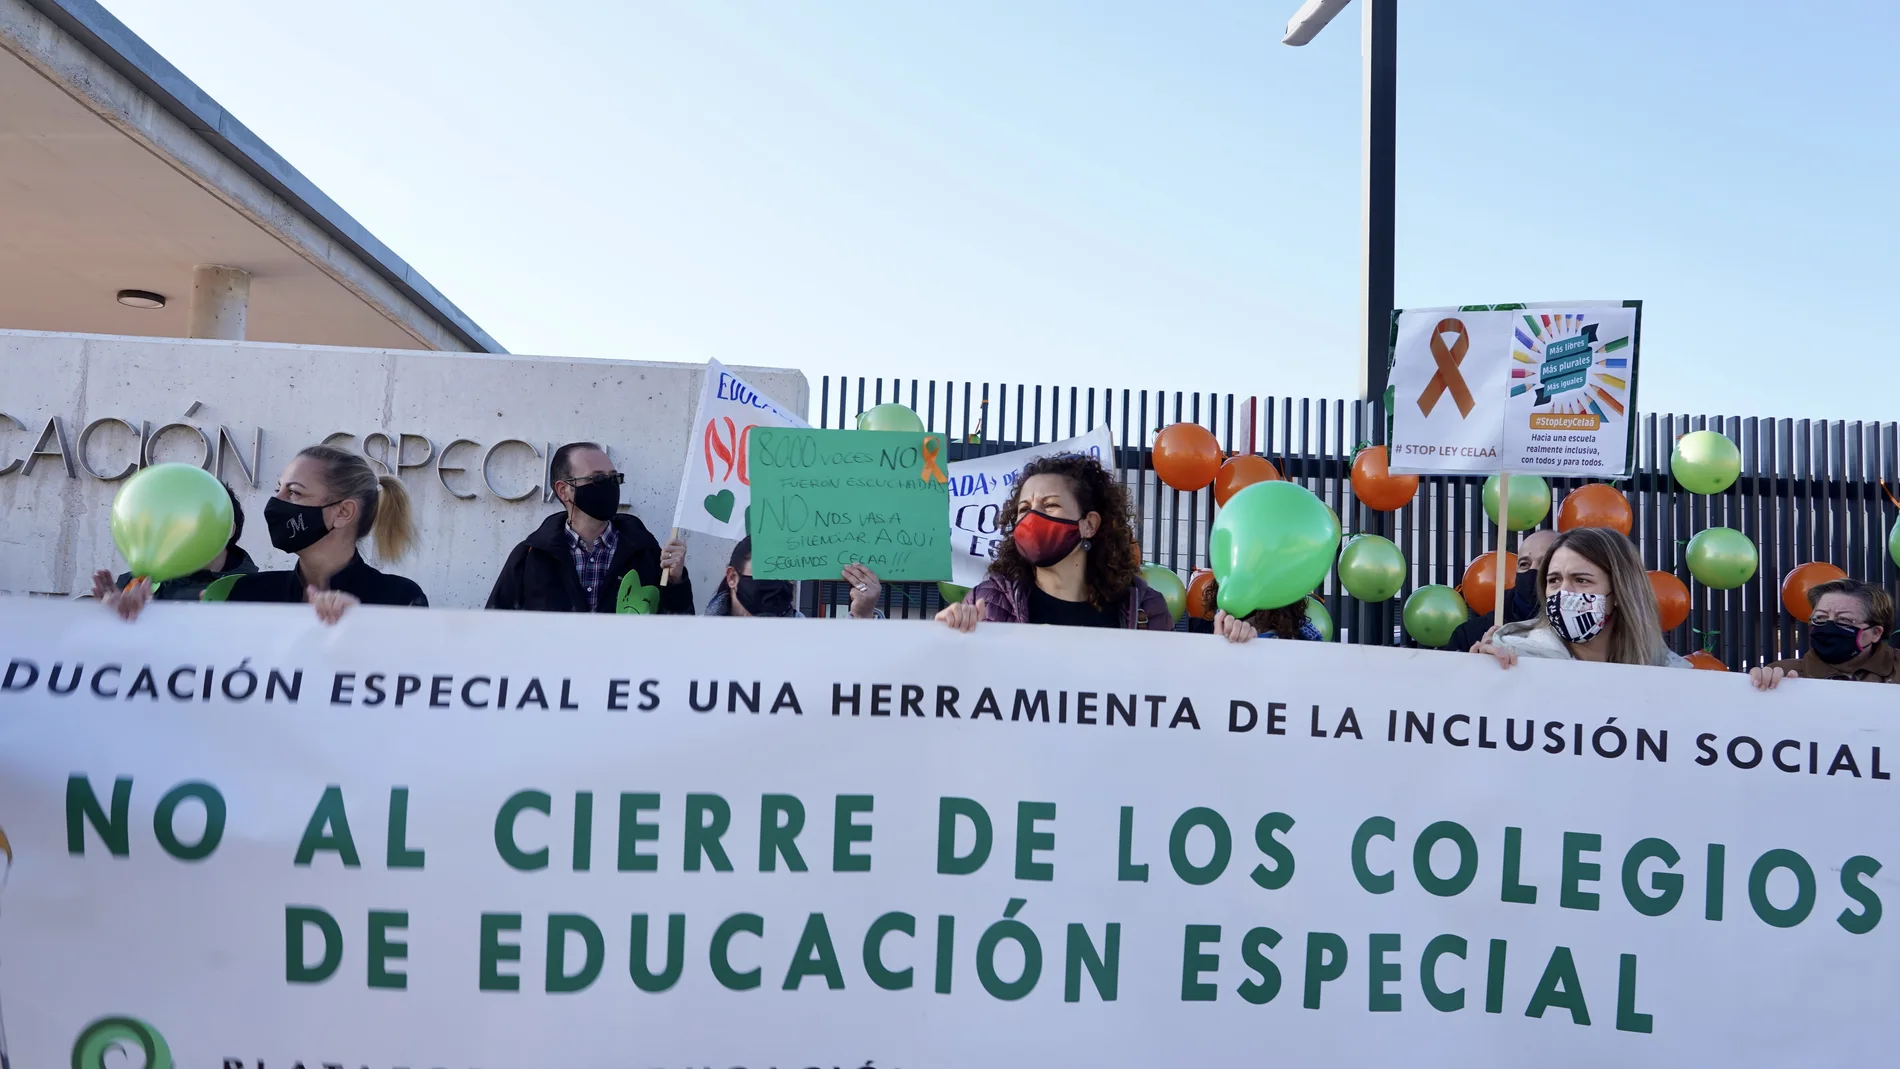 La Asociación Ayuda a la Dependencia y Enfermedades Raras de Castilla y León apoya a las familias con hijos con discapacidad para que no se cierren los colegios de Educación Especial.